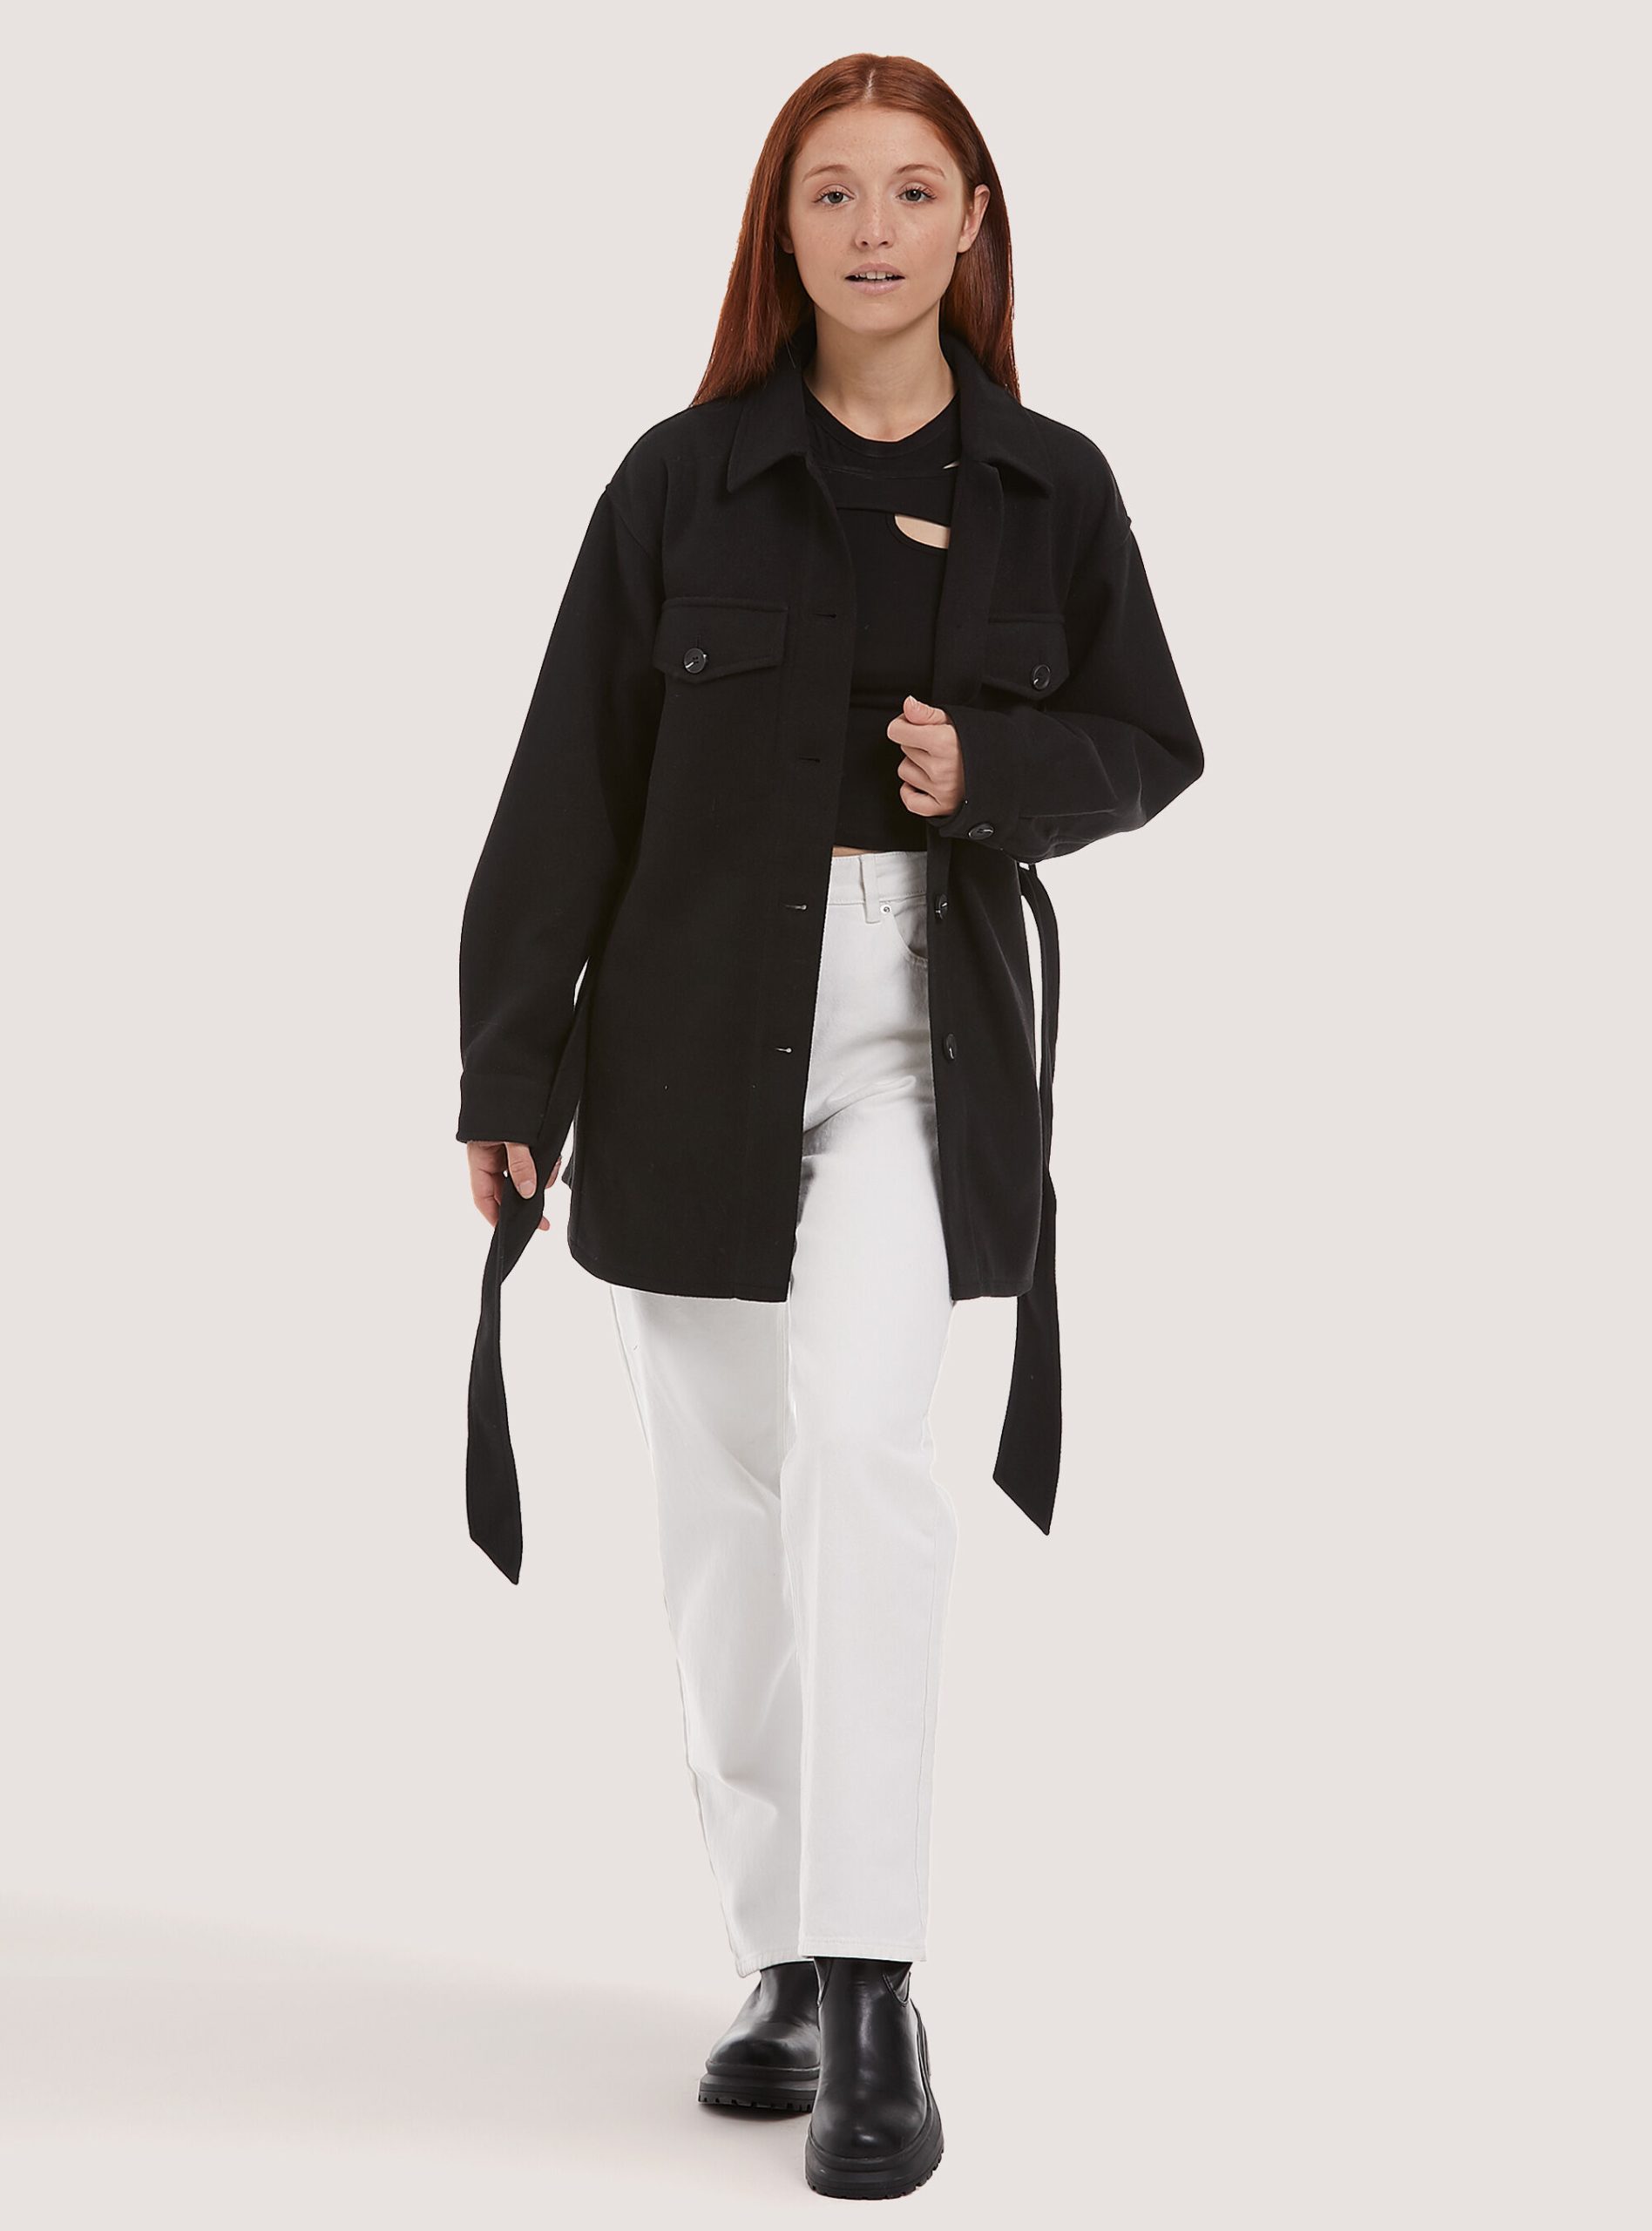 Oversize Soft Touch Shirt Jacket With Belt Empfehlen Frauen Hemden Alcott C101 Black – 2